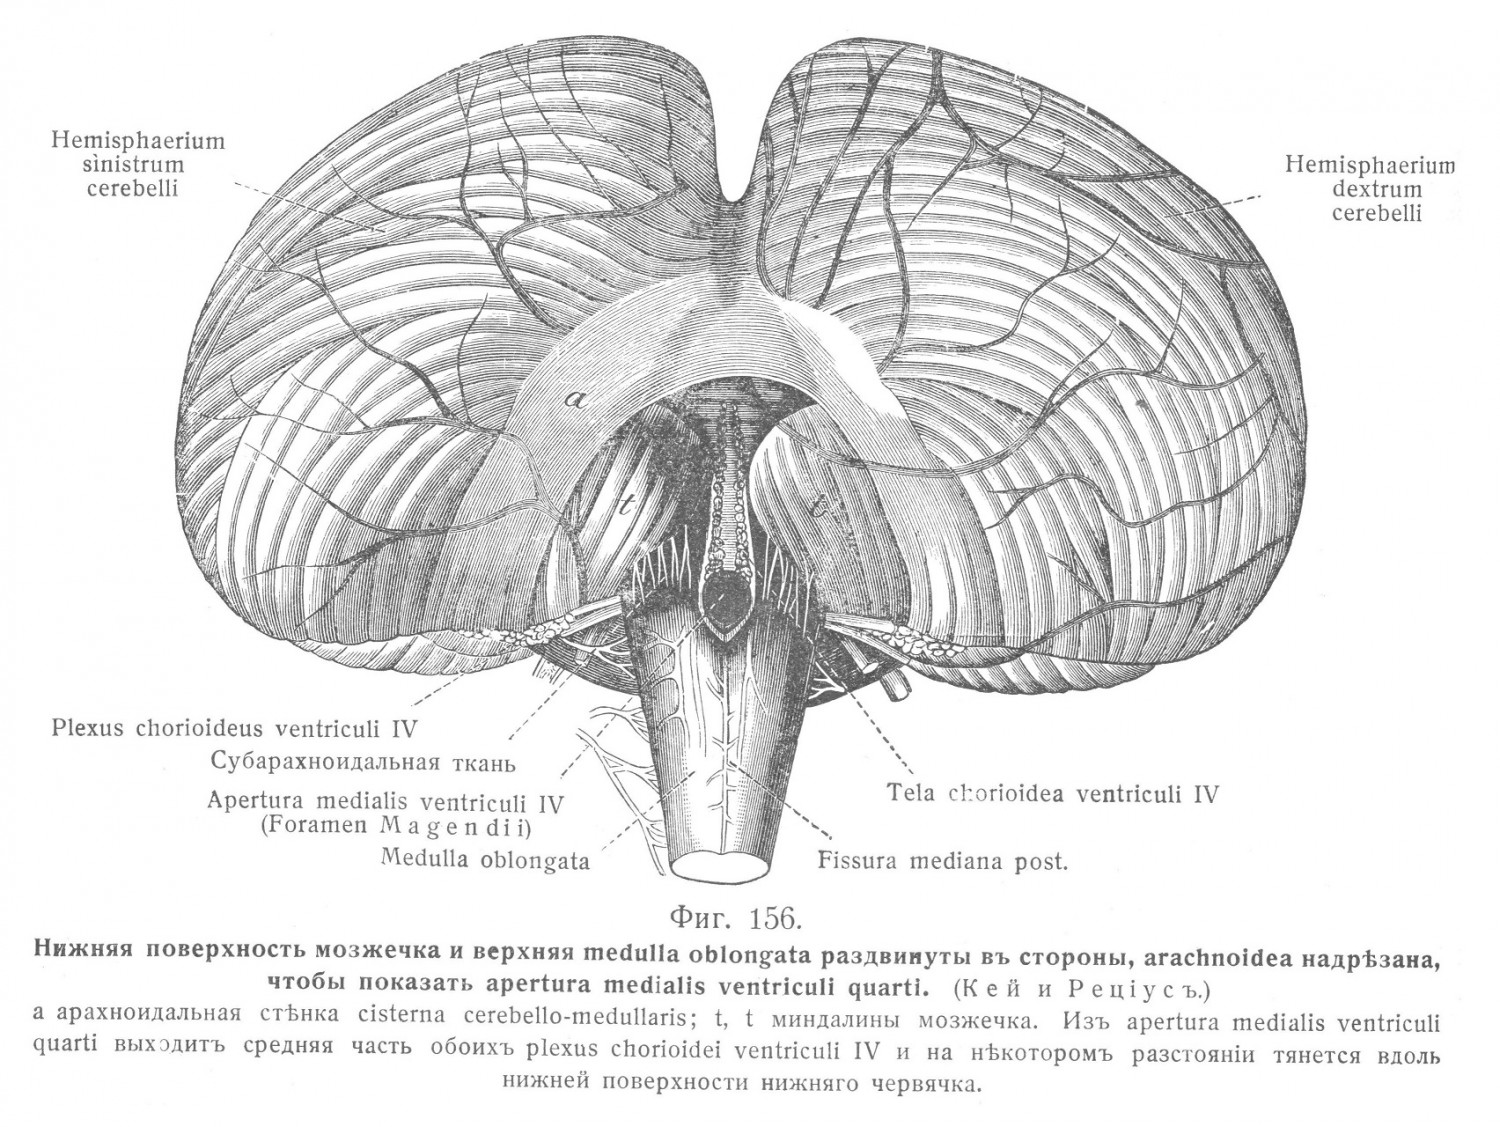 Нижняя поверхность мозжечка и верхняя medulla oblongata